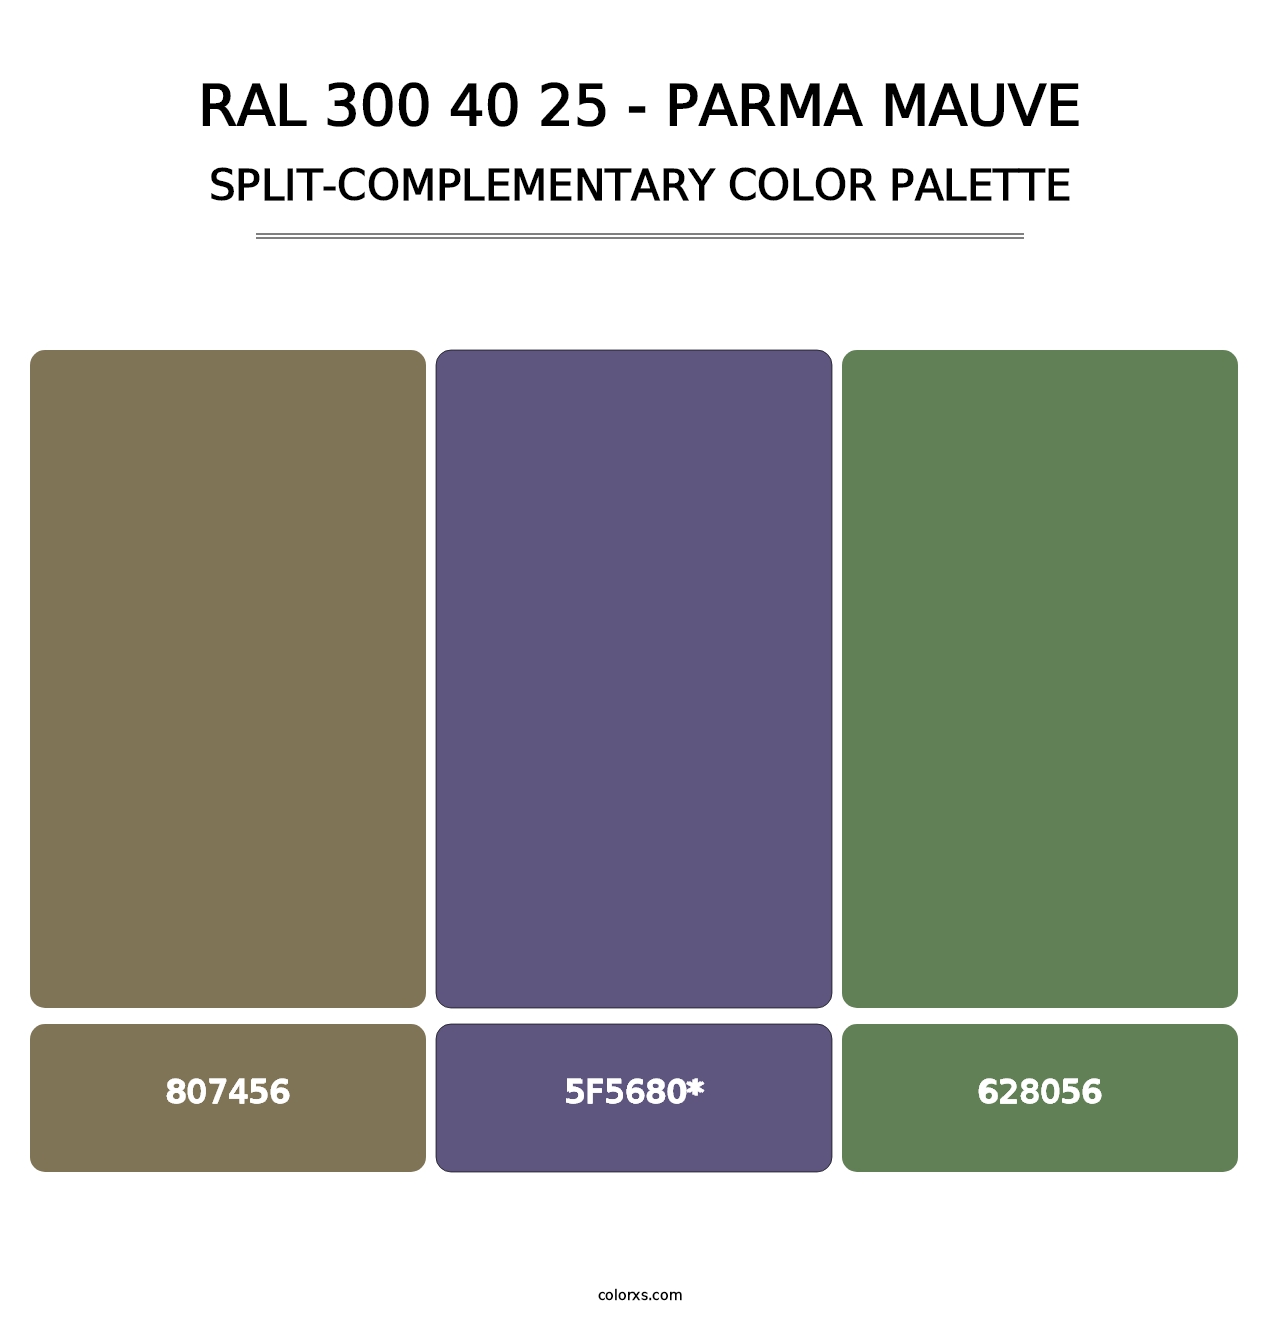 RAL 300 40 25 - Parma Mauve - Split-Complementary Color Palette